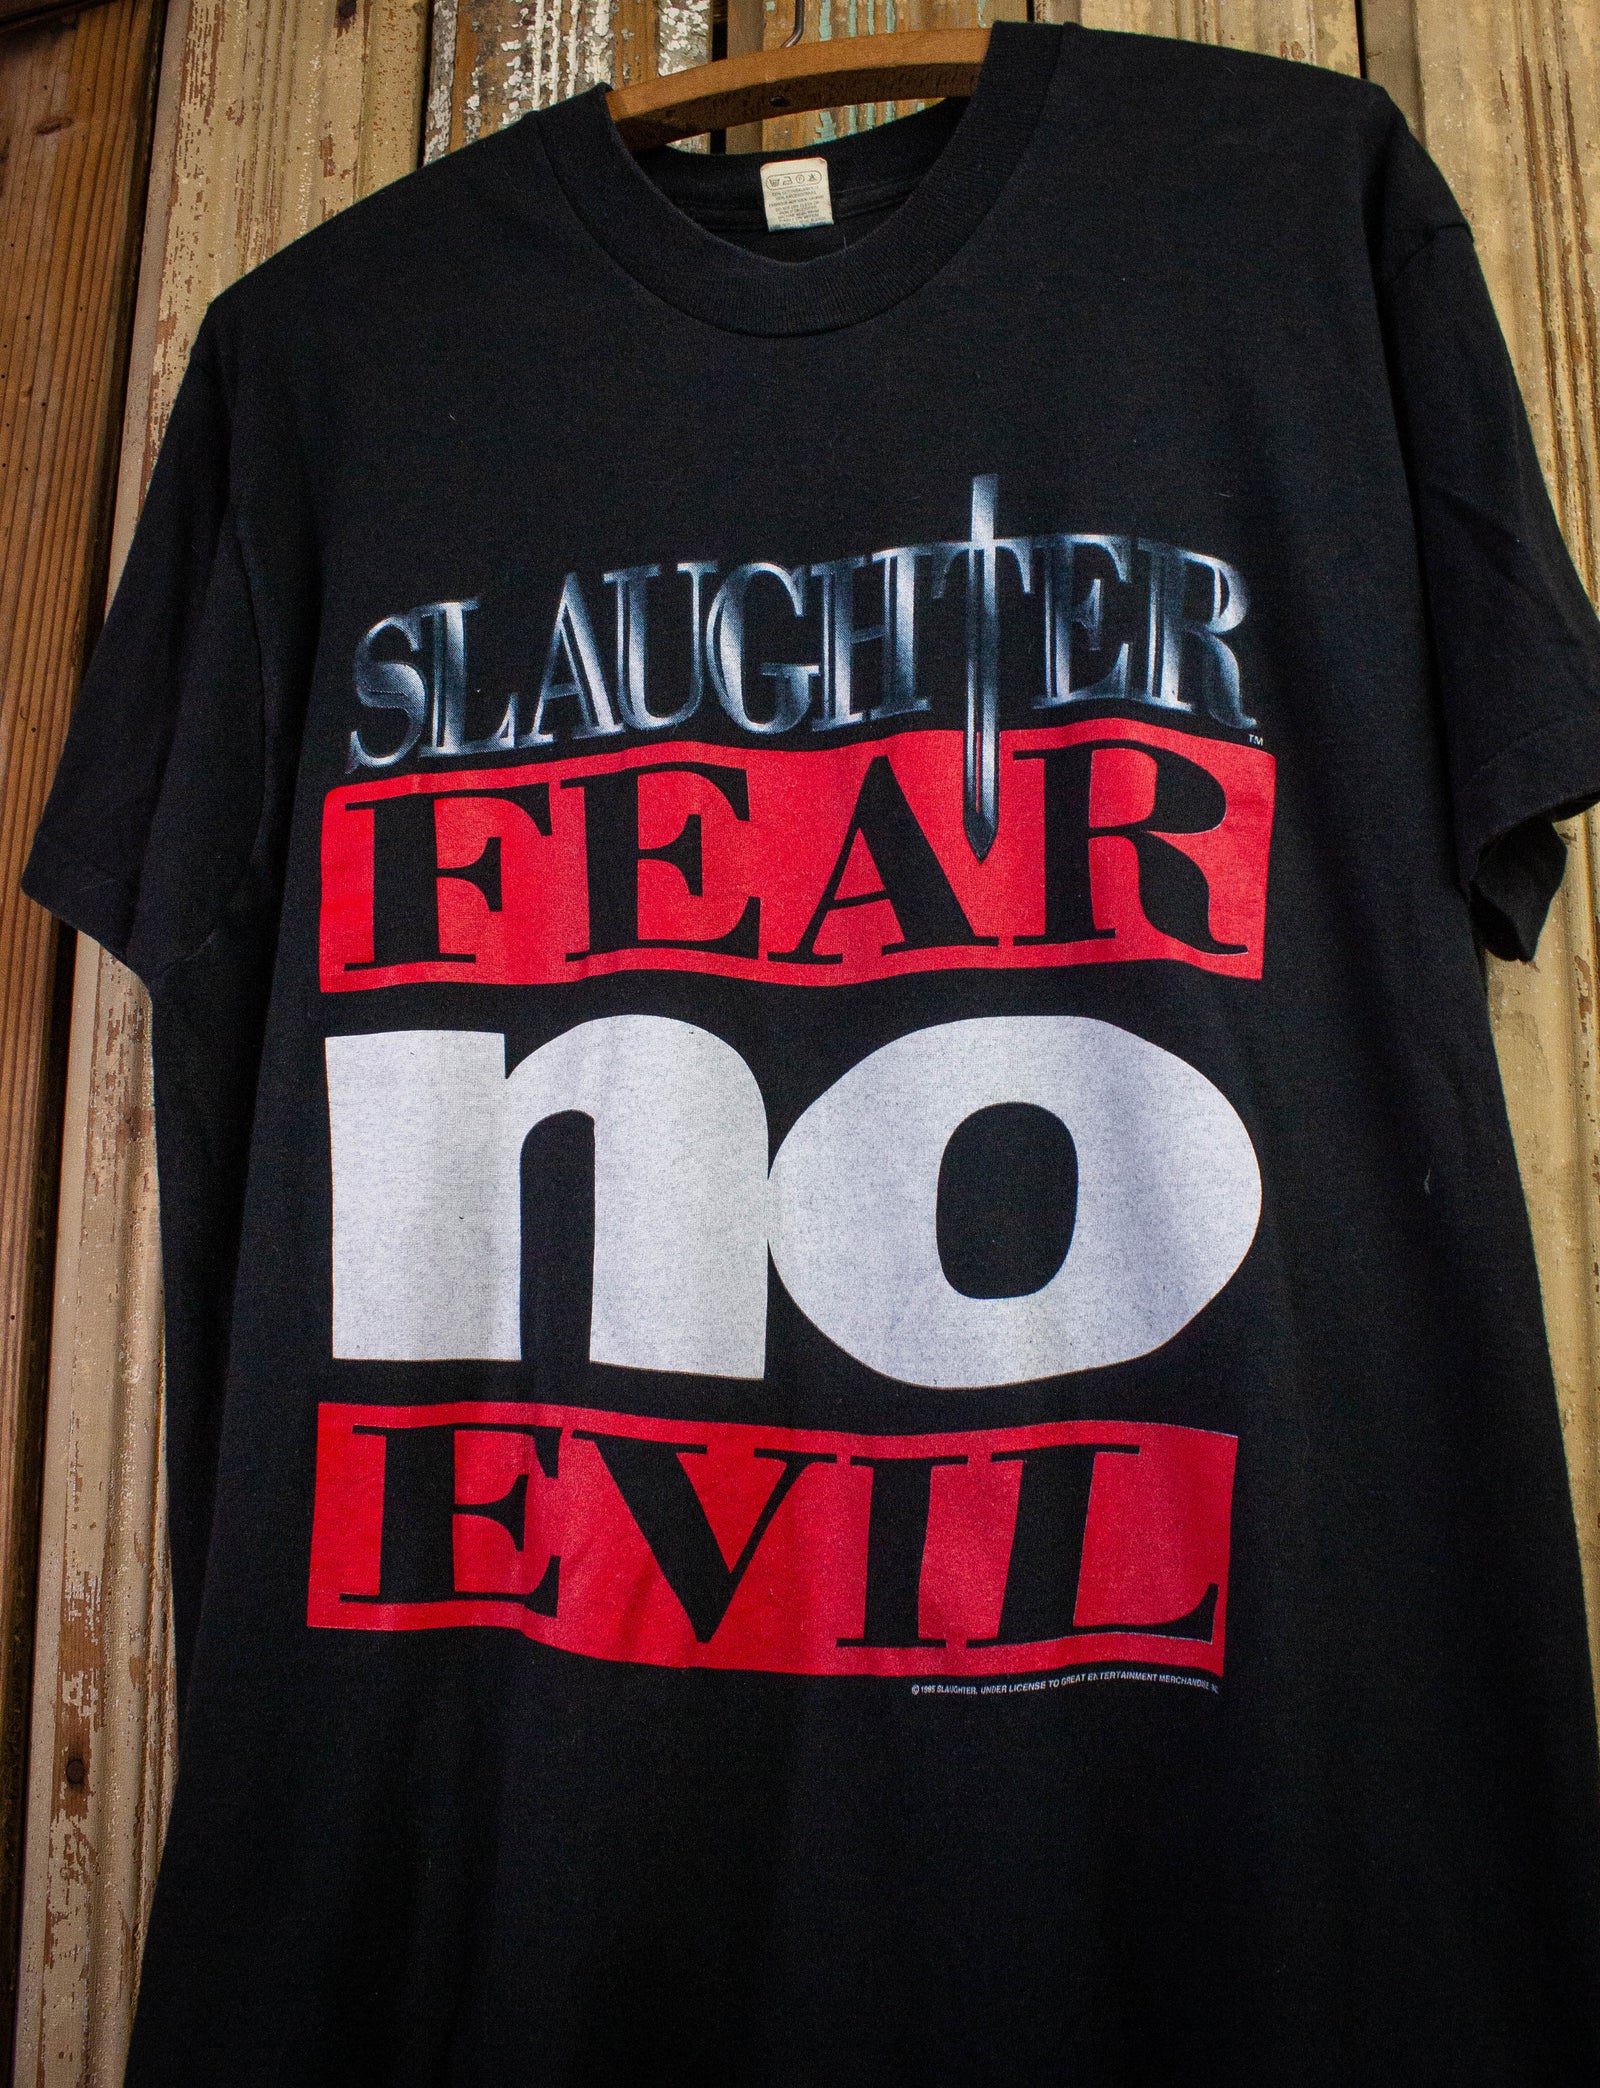 Vintage Slaughter Fear No Evil Concert T Shirt 1995 Black Large